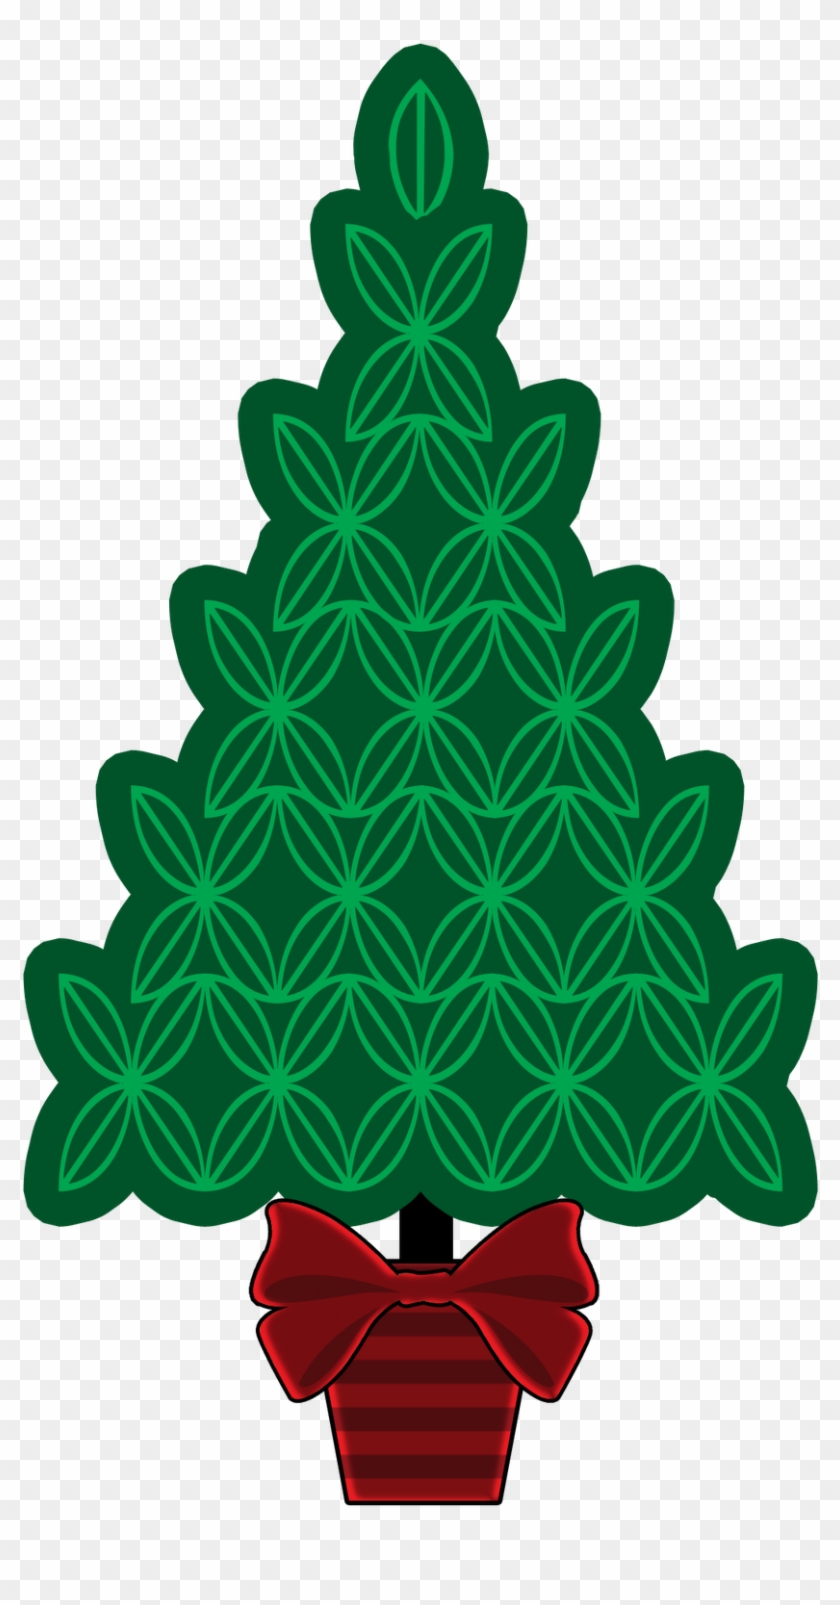 O Christmas Tree - Christmas Tree Clipart #1426374